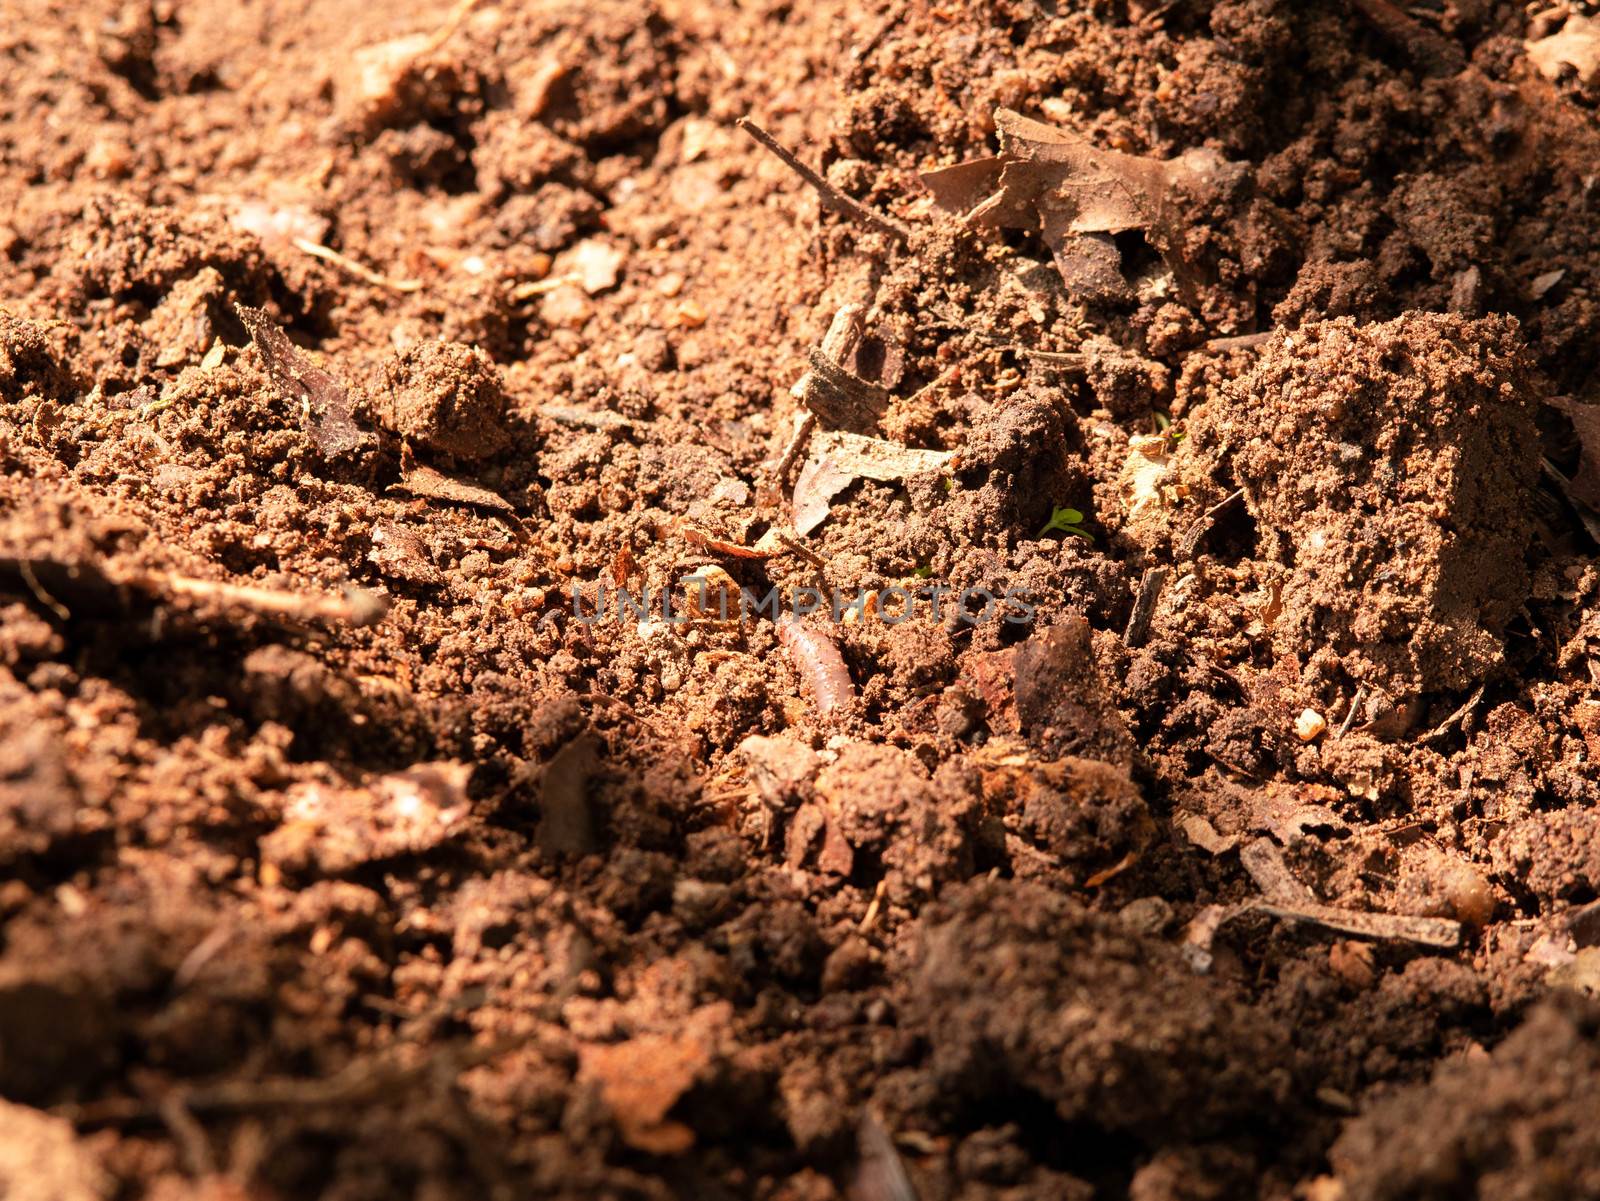 Earthworm in the soil of garden. by TEERASAK